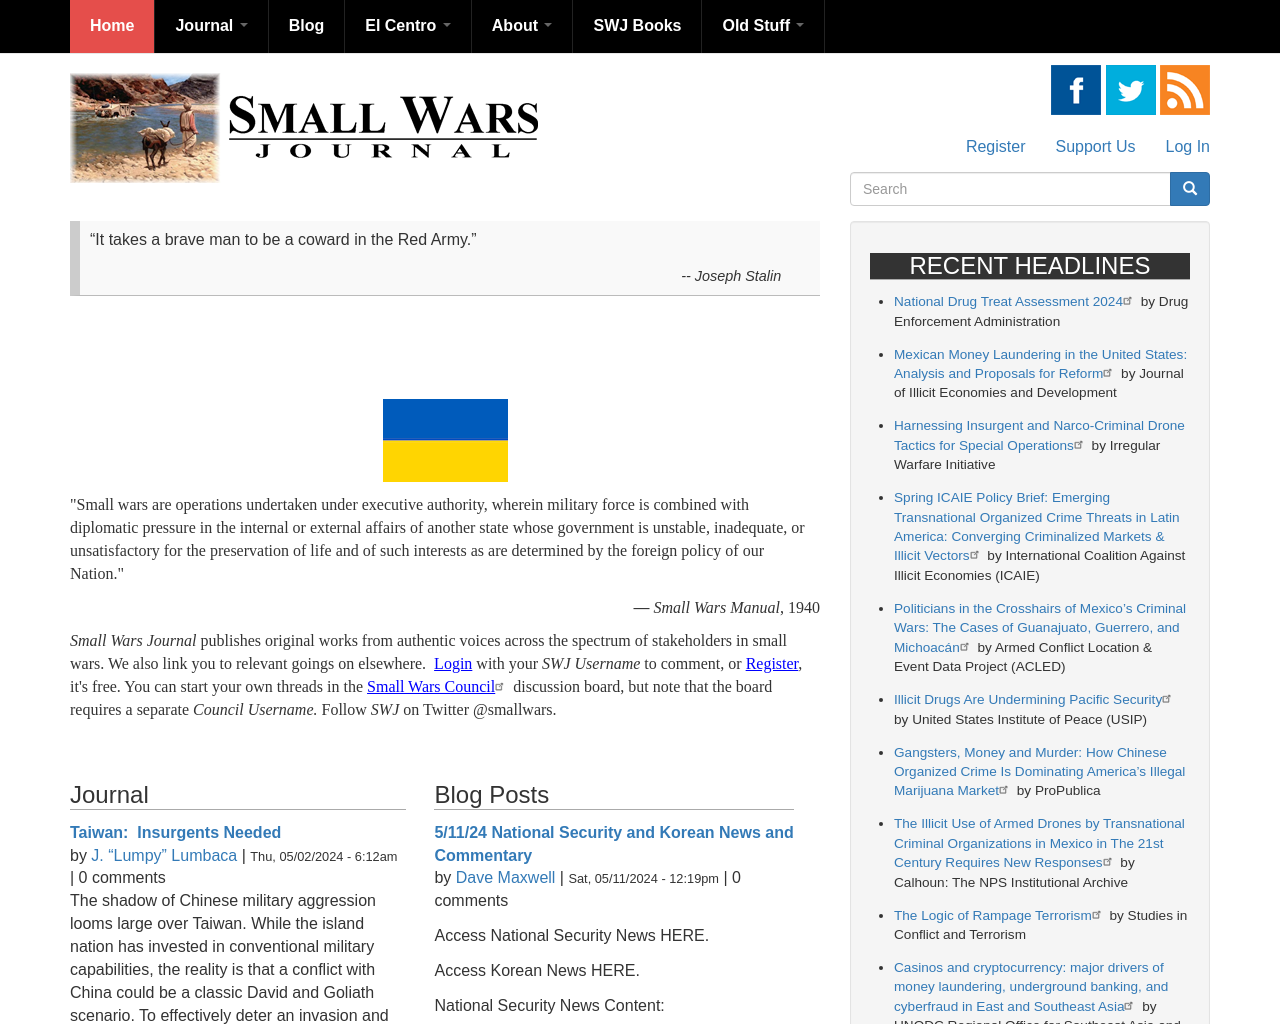 smallwarsjournal.com